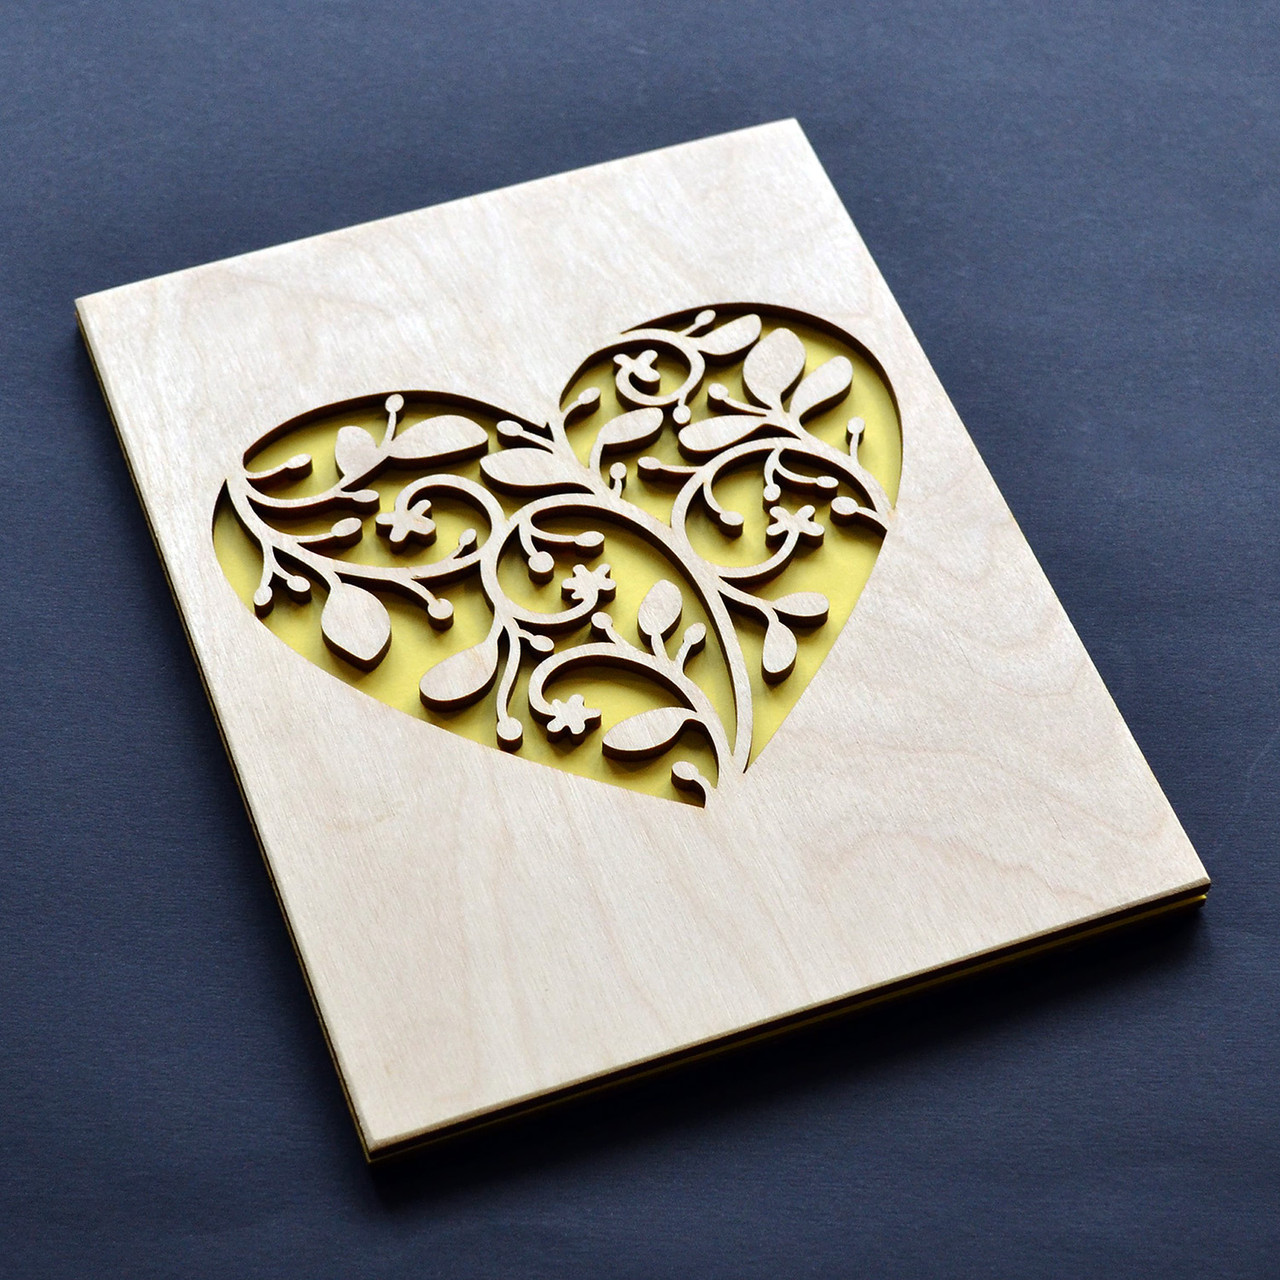 Дерев'яна листівка "Травинки". Креативний подарунок для коханого (коханої), для дівчини, хлопця, дружини чи